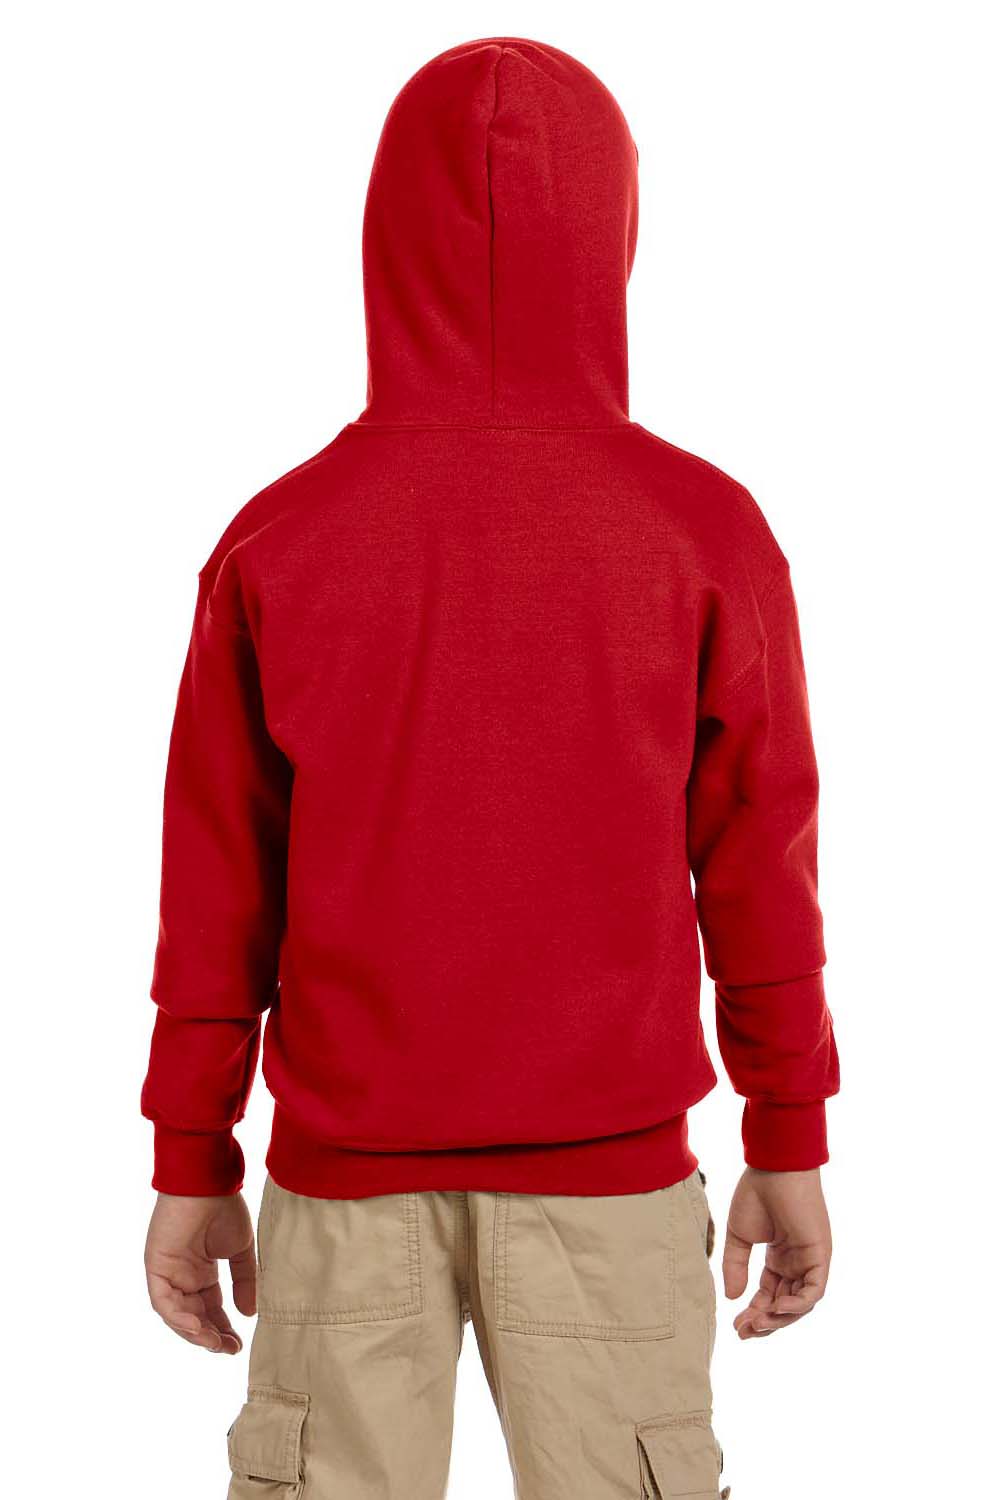 Gildan G186B Youth Full Zip Hooded Sweatshirt Hoodie Red Back